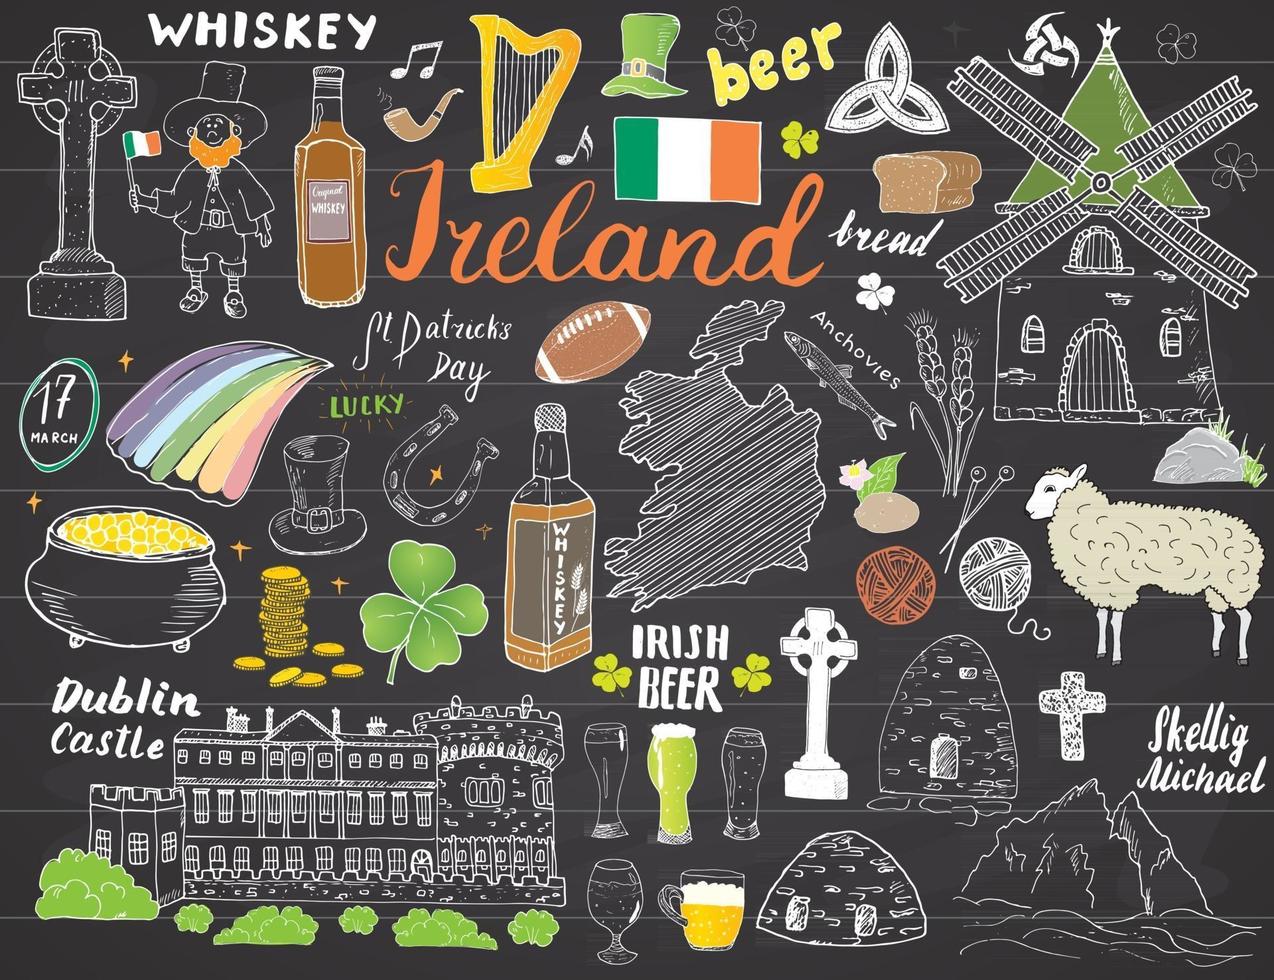 garabatos del bosquejo de Irlanda. Elementos irlandeses dibujados a mano con bandera y mapa de Irlanda, cruz celta, castillo, trébol, arpa celta, molino y oveja, botellas de whisky y cerveza irlandesa, ilustración vectorial vector